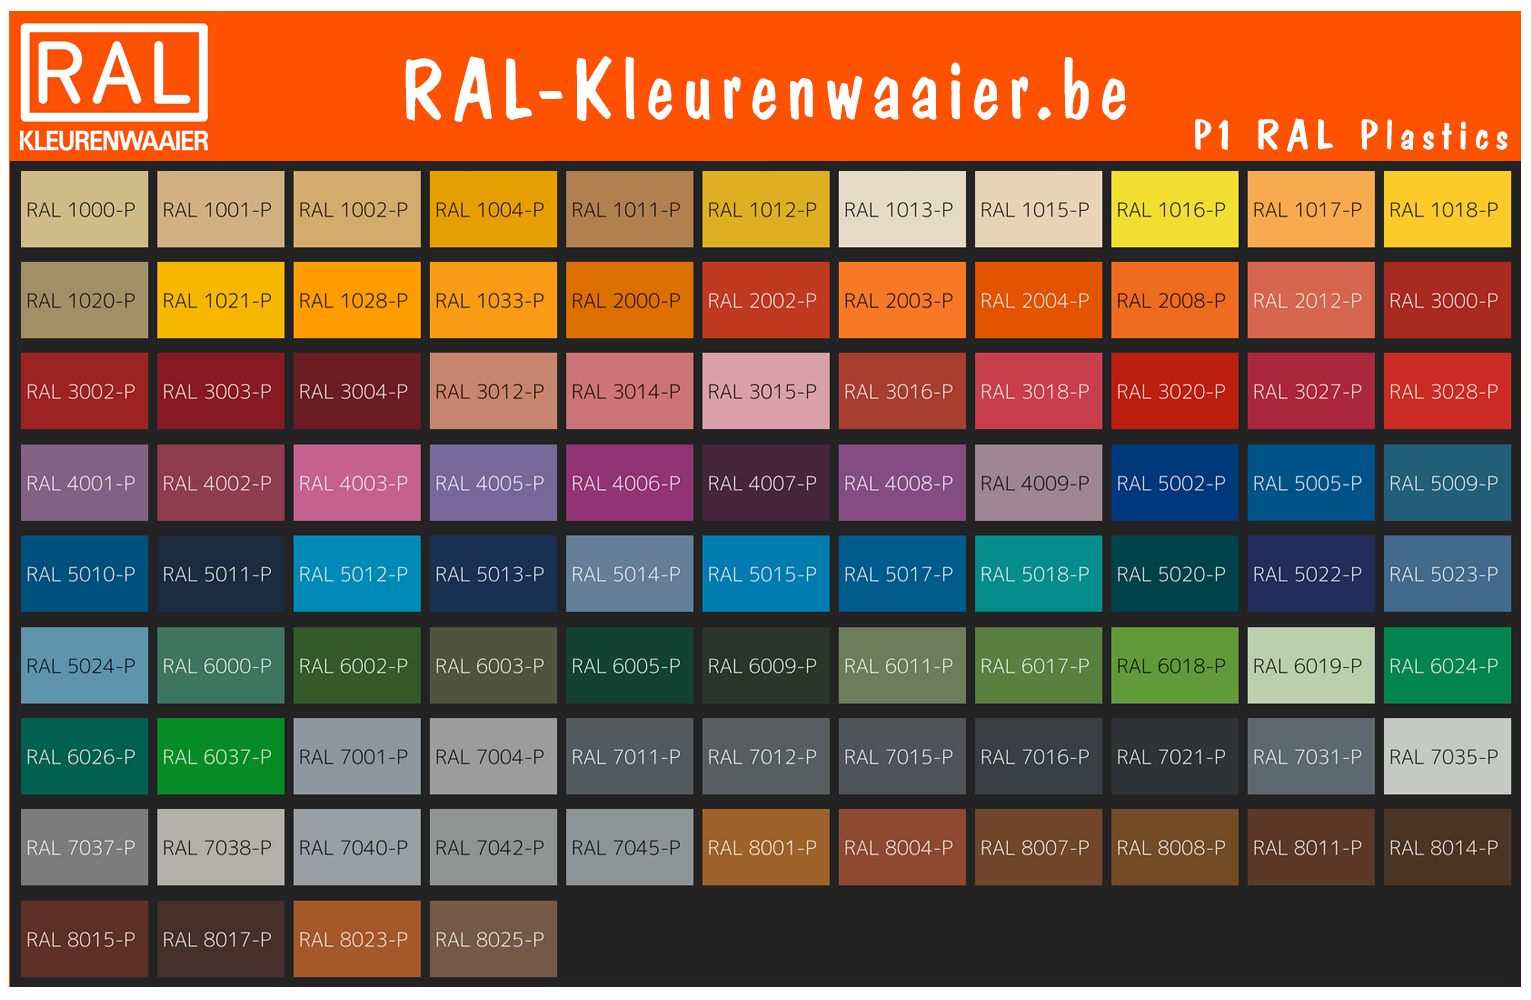 RAL P1 Kleurenwaaier Plastics Belgium